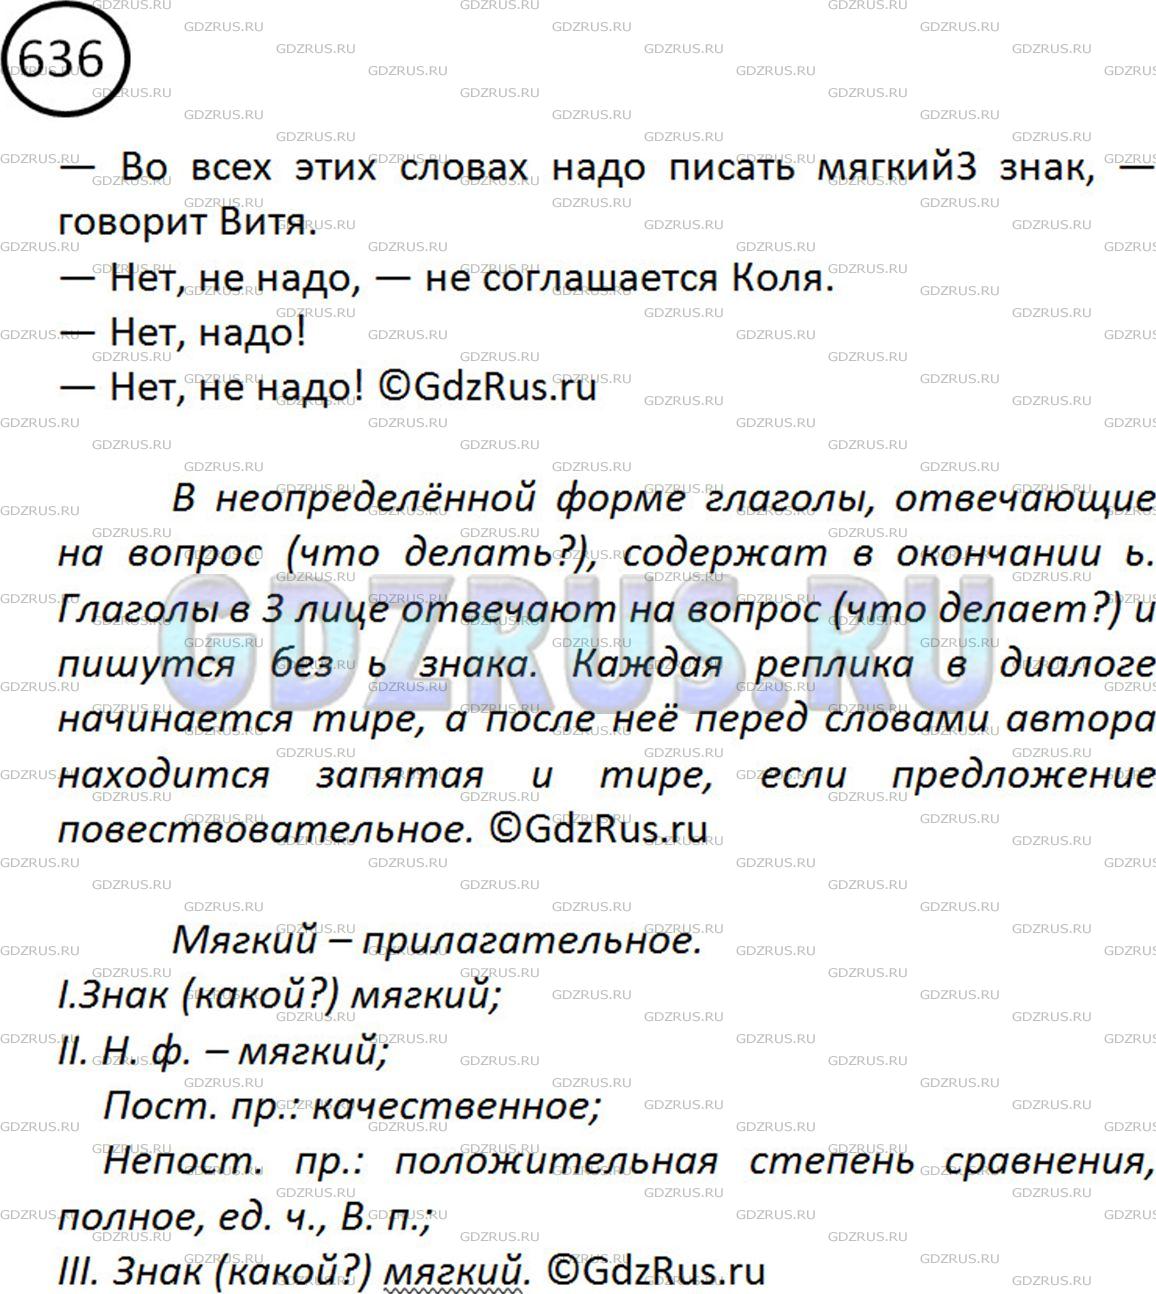 Фото решения 2: ГДЗ по Русскому языку 5 класса: Ладыженская Упр. 636